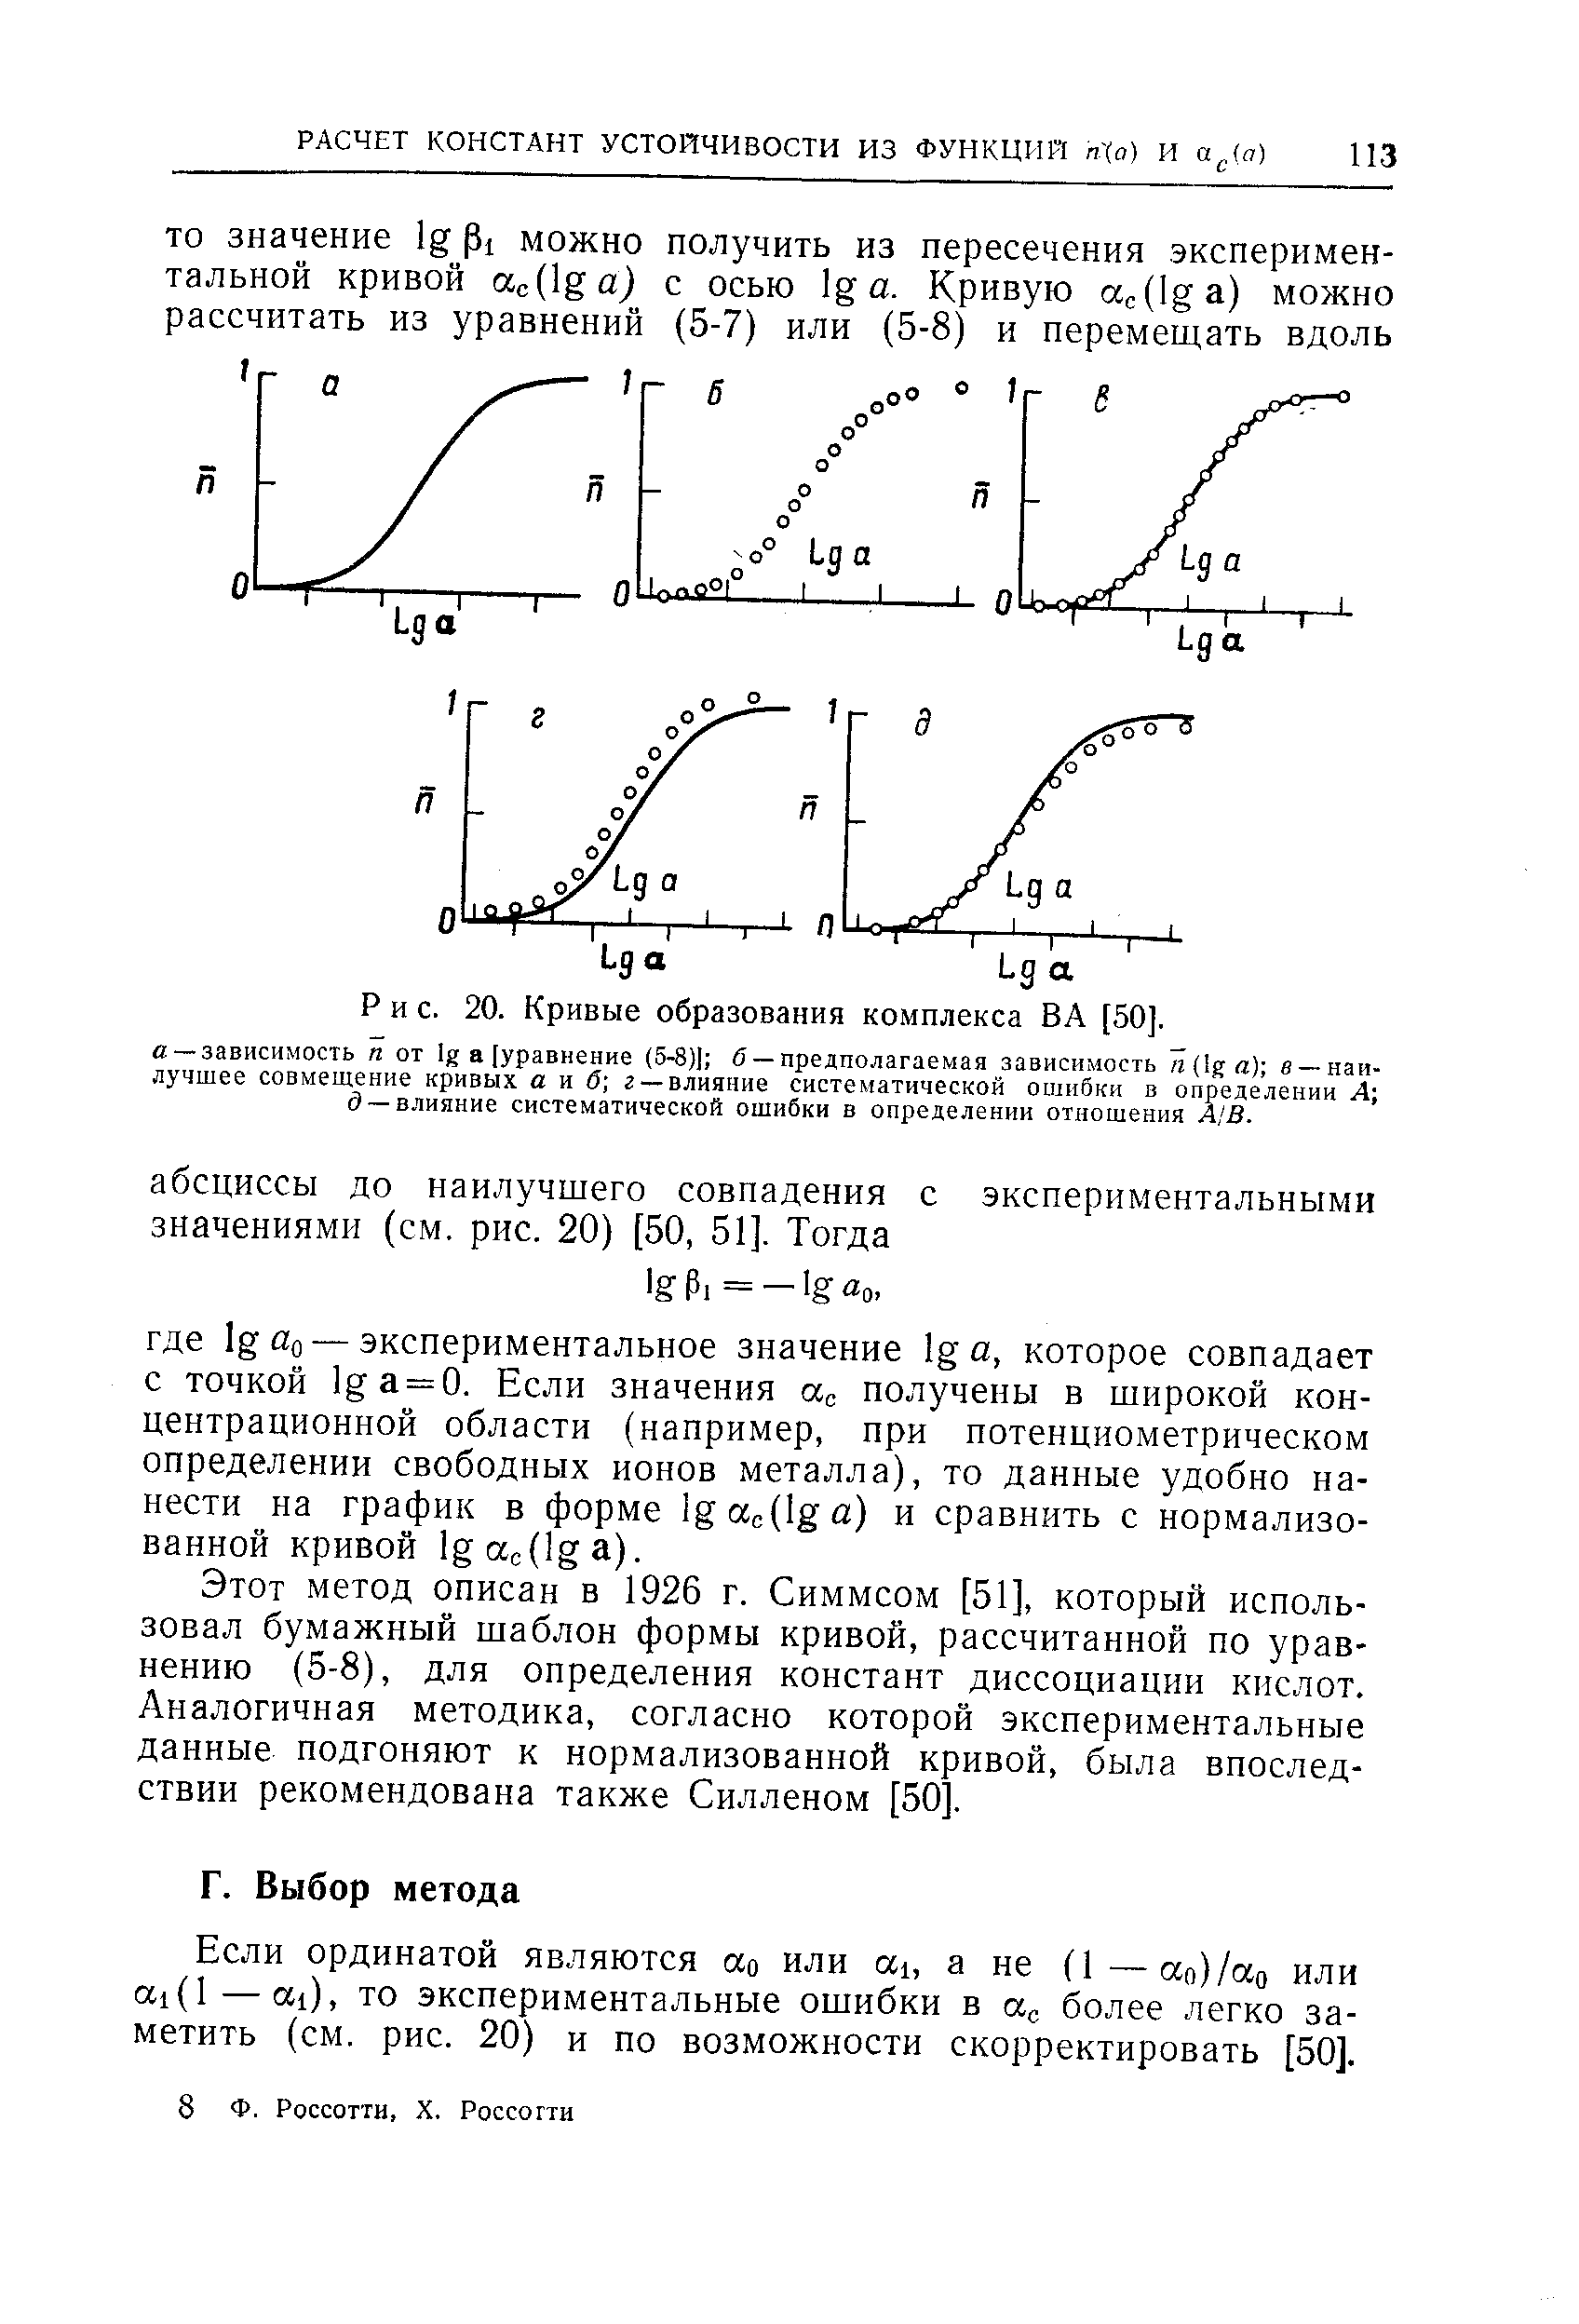 Этот метод описан в 1926 г. Симмсом [51], который использовал бумажный шаблон формы кривой, рассчитанной по уравнению (5-8), для определения констант диссоциации кислот. Аналогичная методика, согласно которой экспериментальные данные подгоняют к нормализованной кривой, была впоследствии рекомендована также Силленом [50].